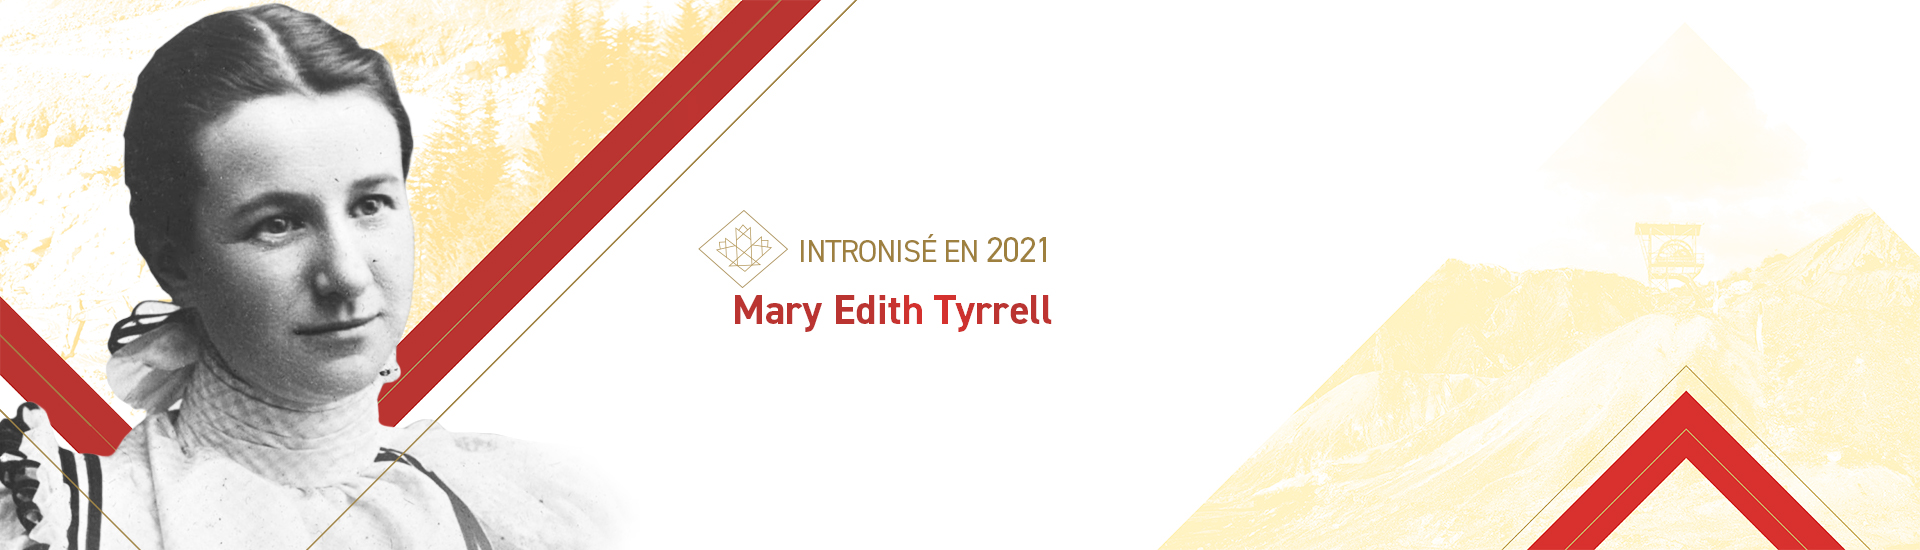 Mary Edith Tyrrell (1870 - 1945)